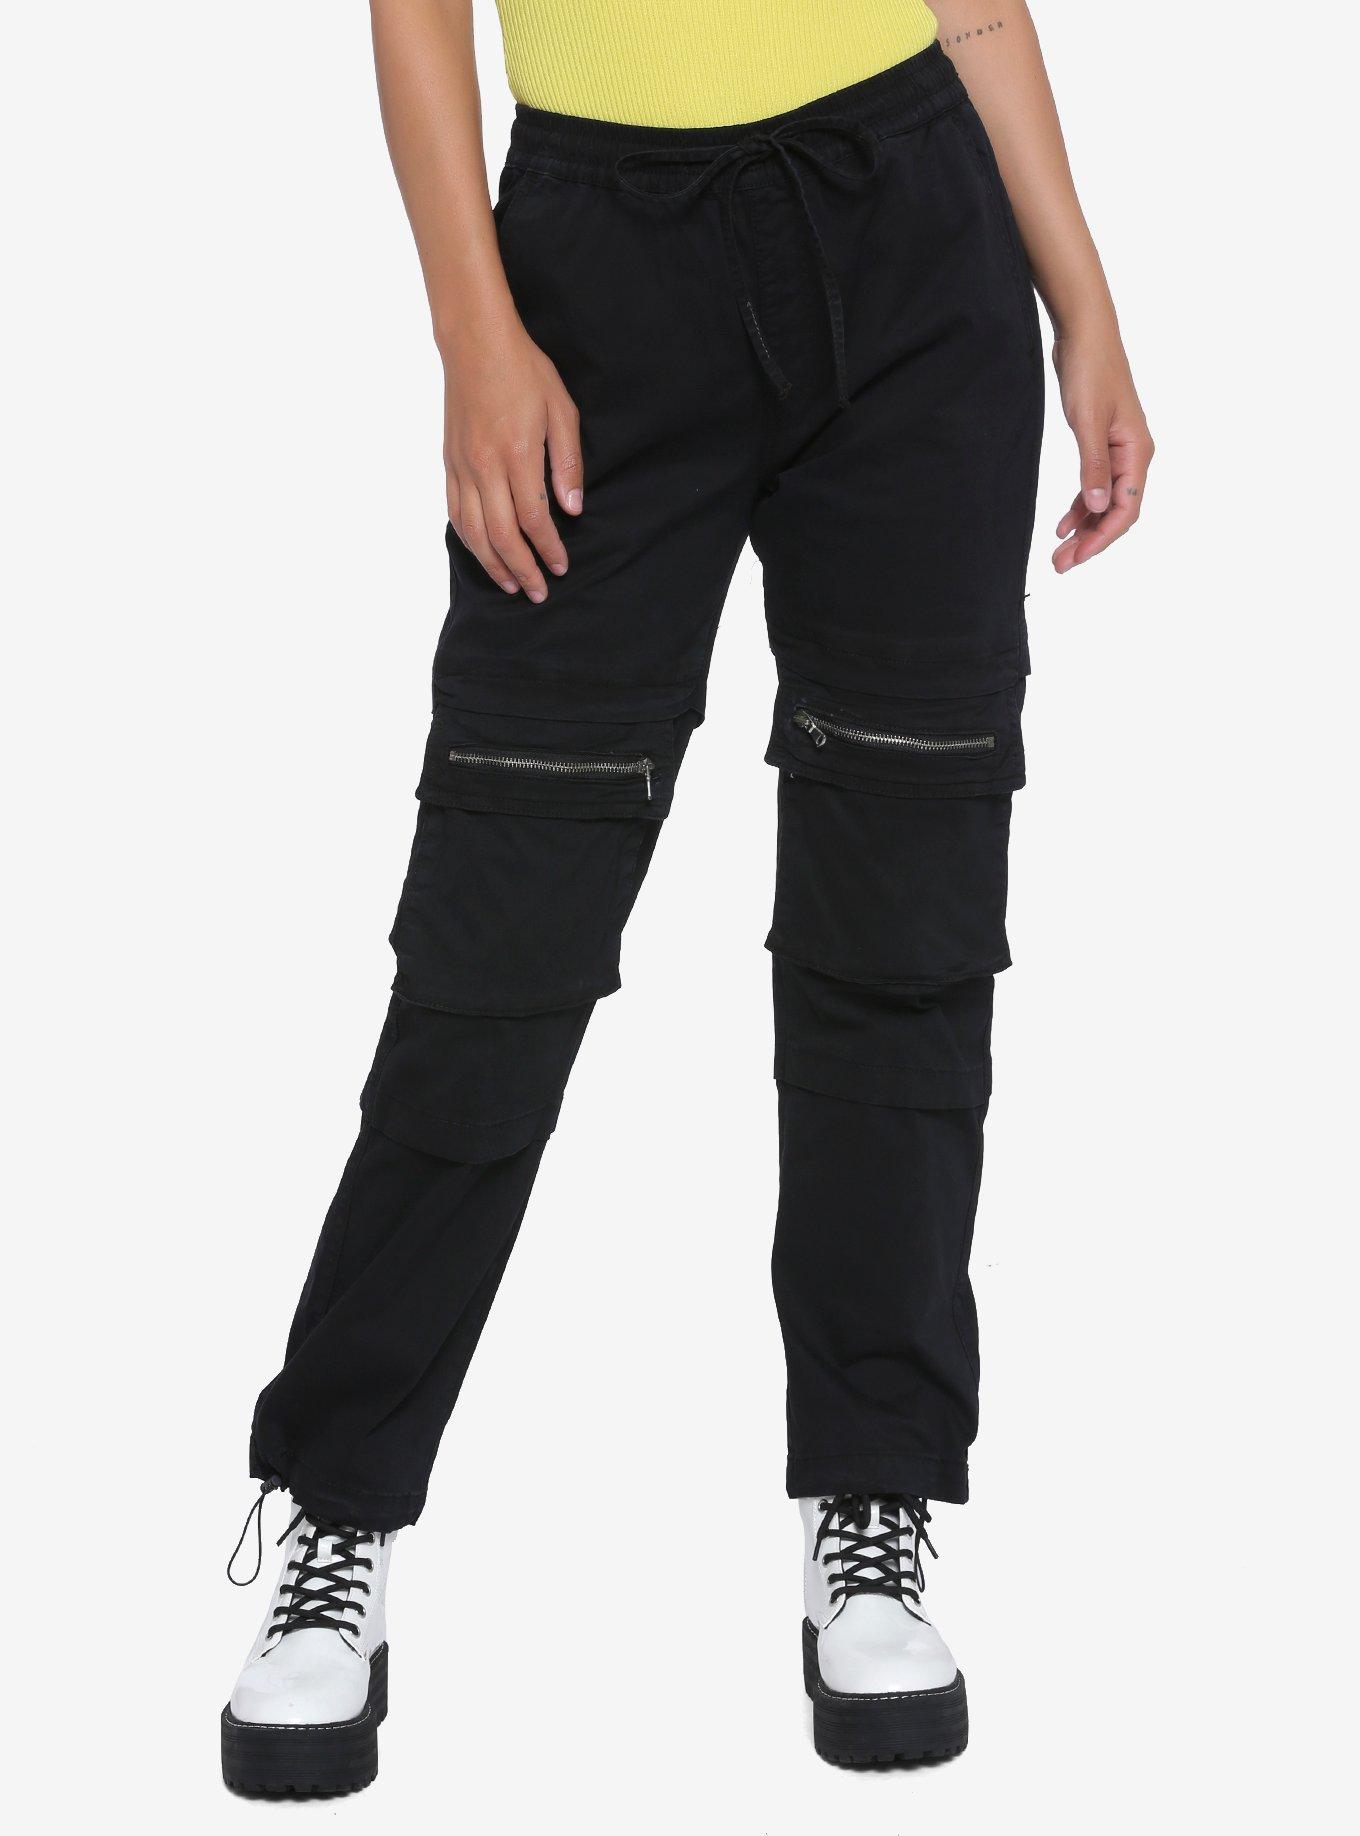 Black Zipper Pocket Jogger Pants, BLACK, hi-res